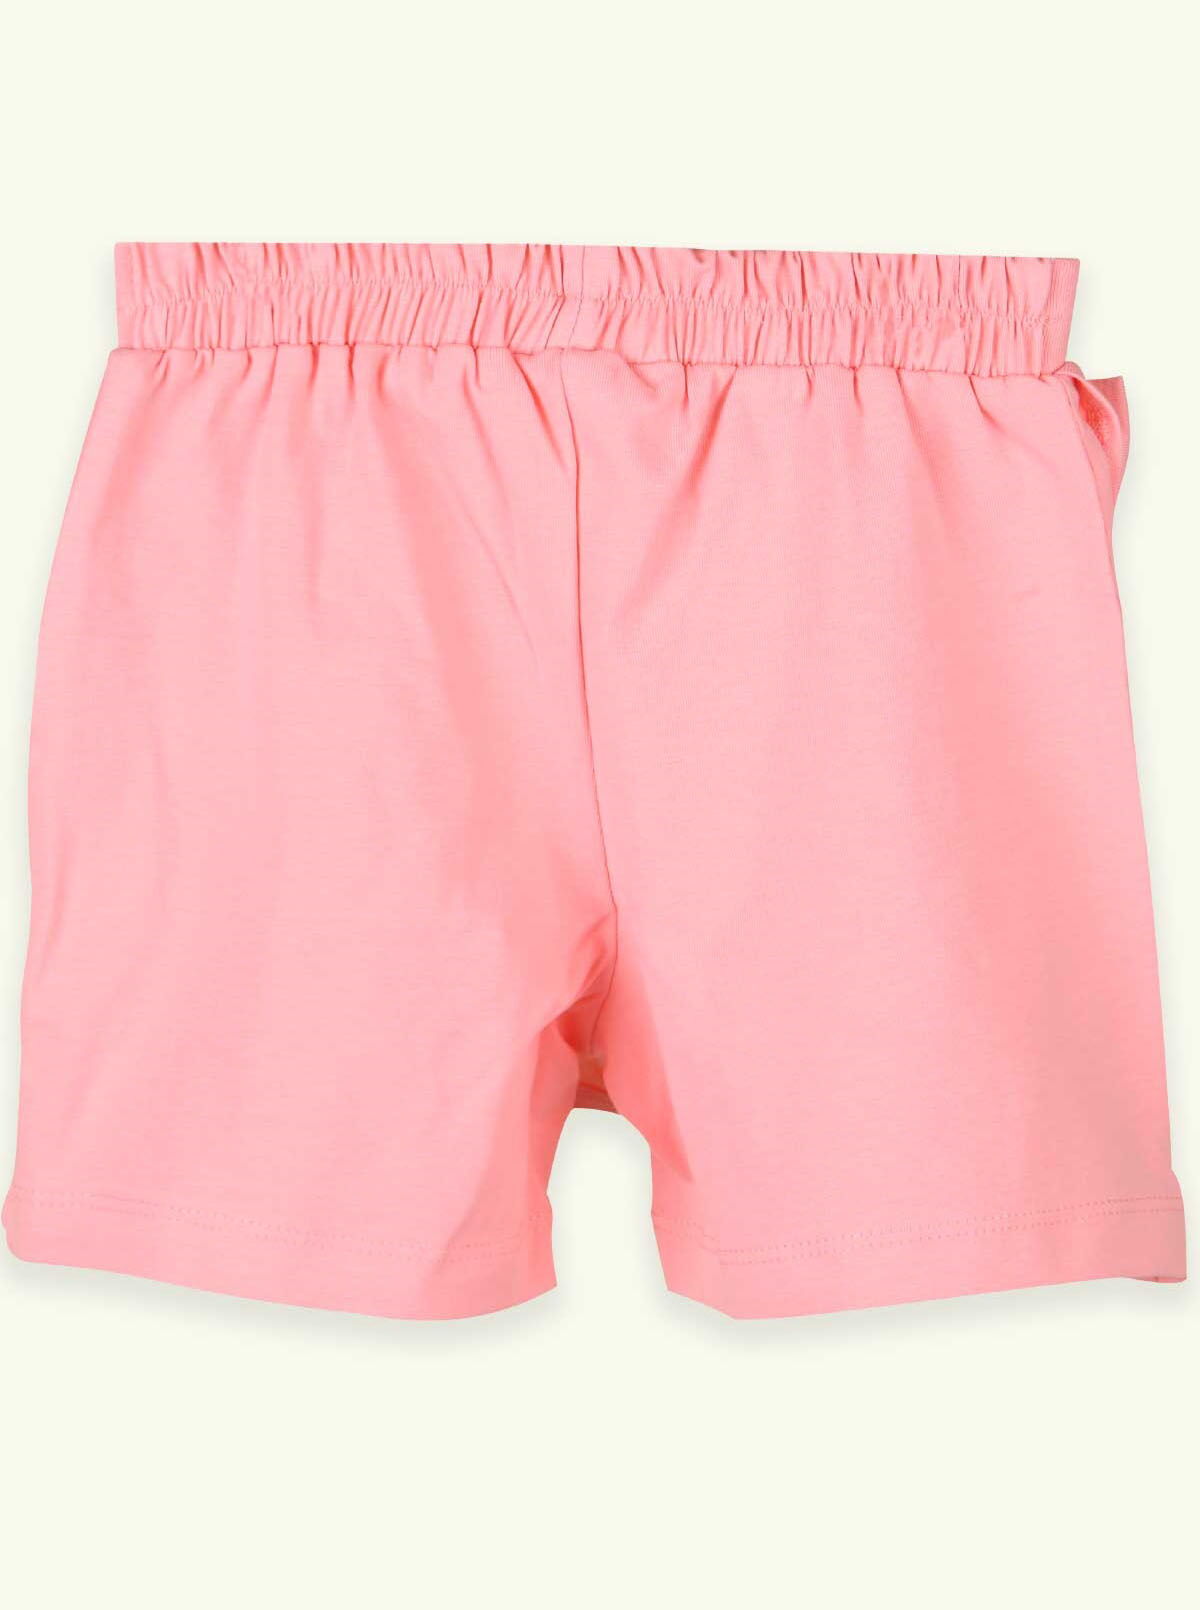 Юбка-шорты для девочки Breeze персиковая 15645 - размеры